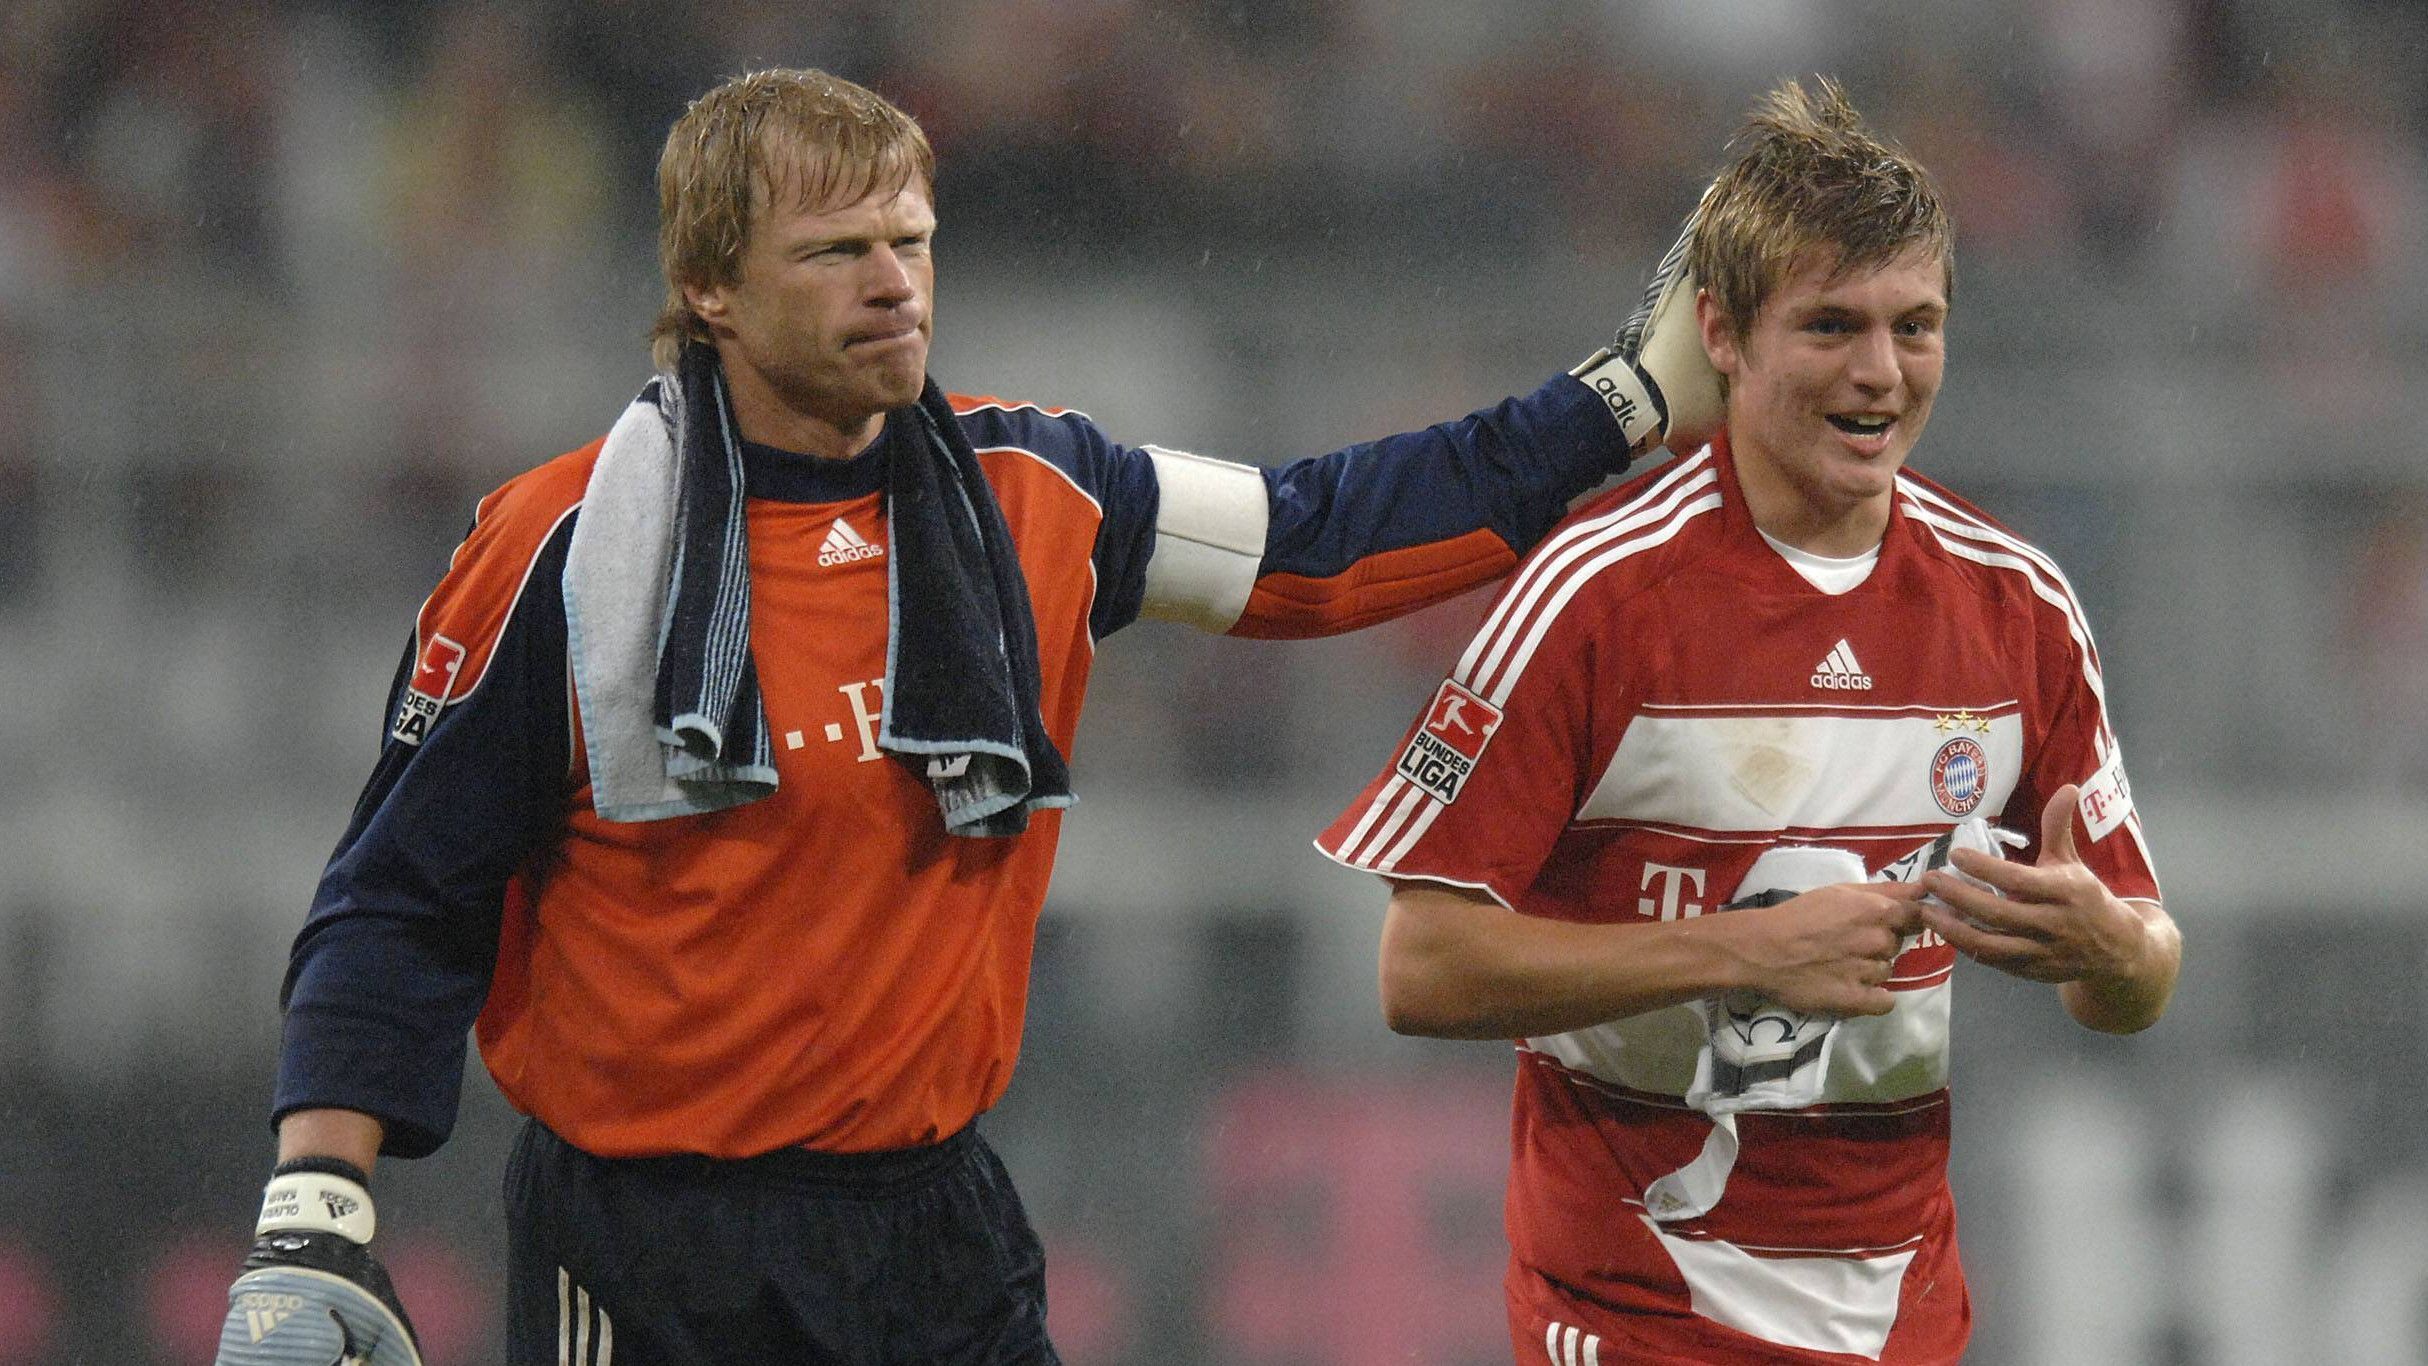 <strong>Profidebüt bei Bayern München</strong><br>Dieser folgt in der U19-Mannschaft des FC Bayern München. Schon nach einem Jahr wird er in den Profikader des Rekordmeisters aufgenommen. Sein Bundesliga-Debüt gibt er im September 2007 als gerade mal 17-Jähriger. Bereits in seiner ersten Saison gewinnt er mit den Bayern das Double aus Meisterschaft und Pokal.